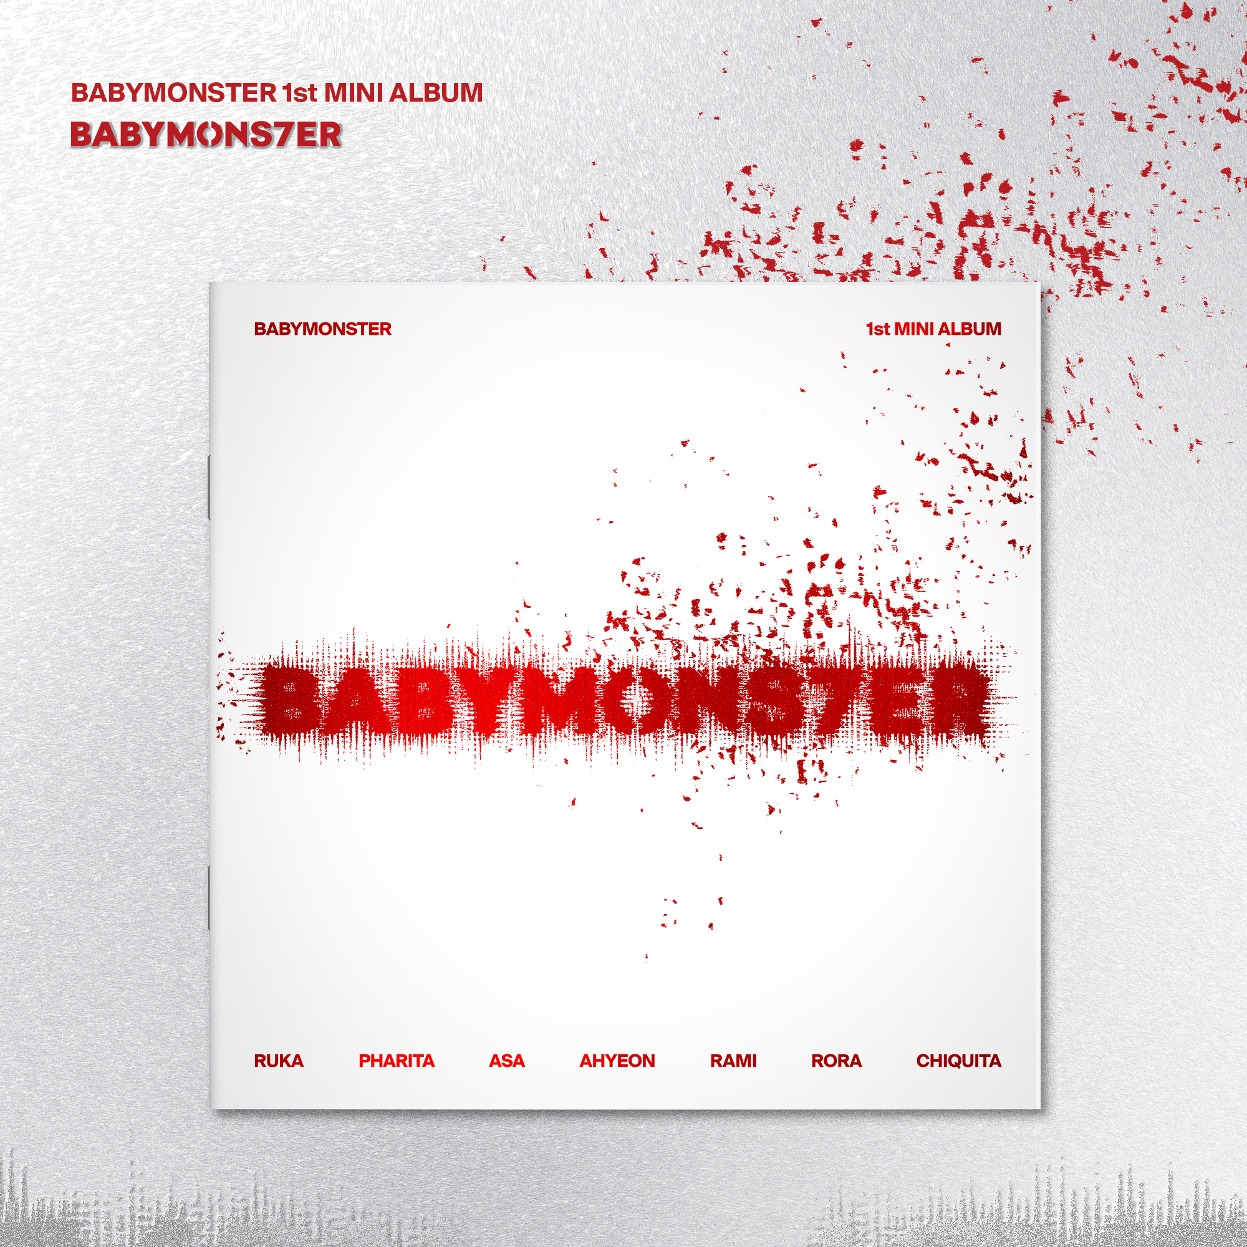 ベビーモンスター (BABYMONSTER) - ミニアルバム 1stアルバム [BABYMONS7ER] (PHOTOBOOK VER.)